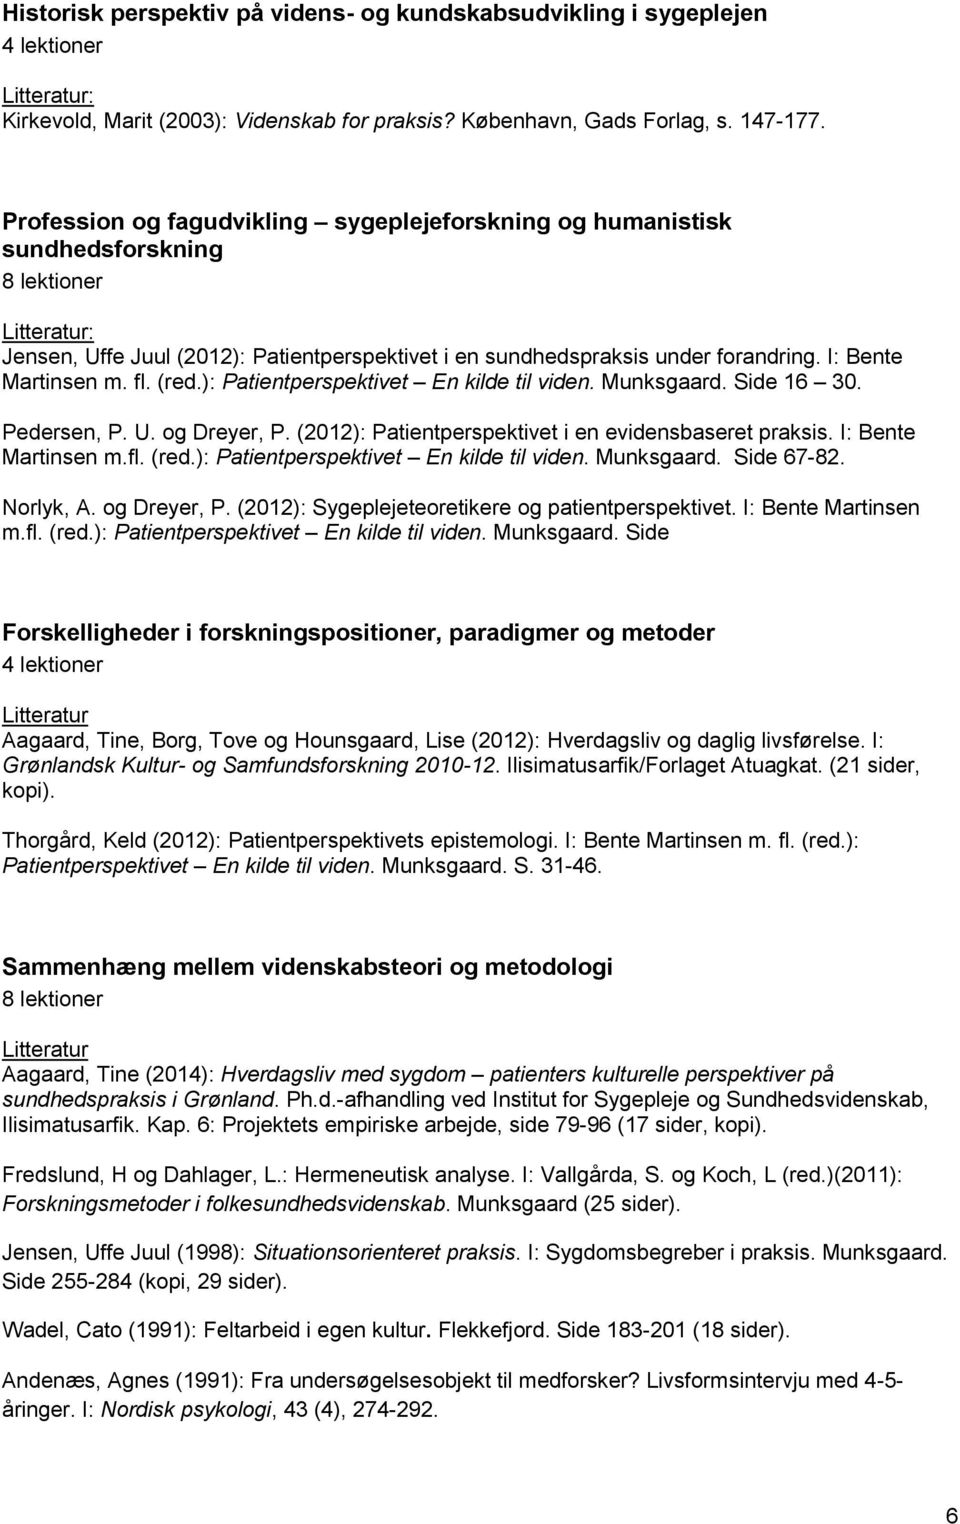 fl. (red.): Patientperspektivet En kilde til viden. Munksgaard. Side 16 30. Pedersen, P. U. og Dreyer, P. (2012): Patientperspektivet i en evidensbaseret praksis. I: Bente Martinsen m.fl. (red.): Patientperspektivet En kilde til viden. Munksgaard. Side 67-82.